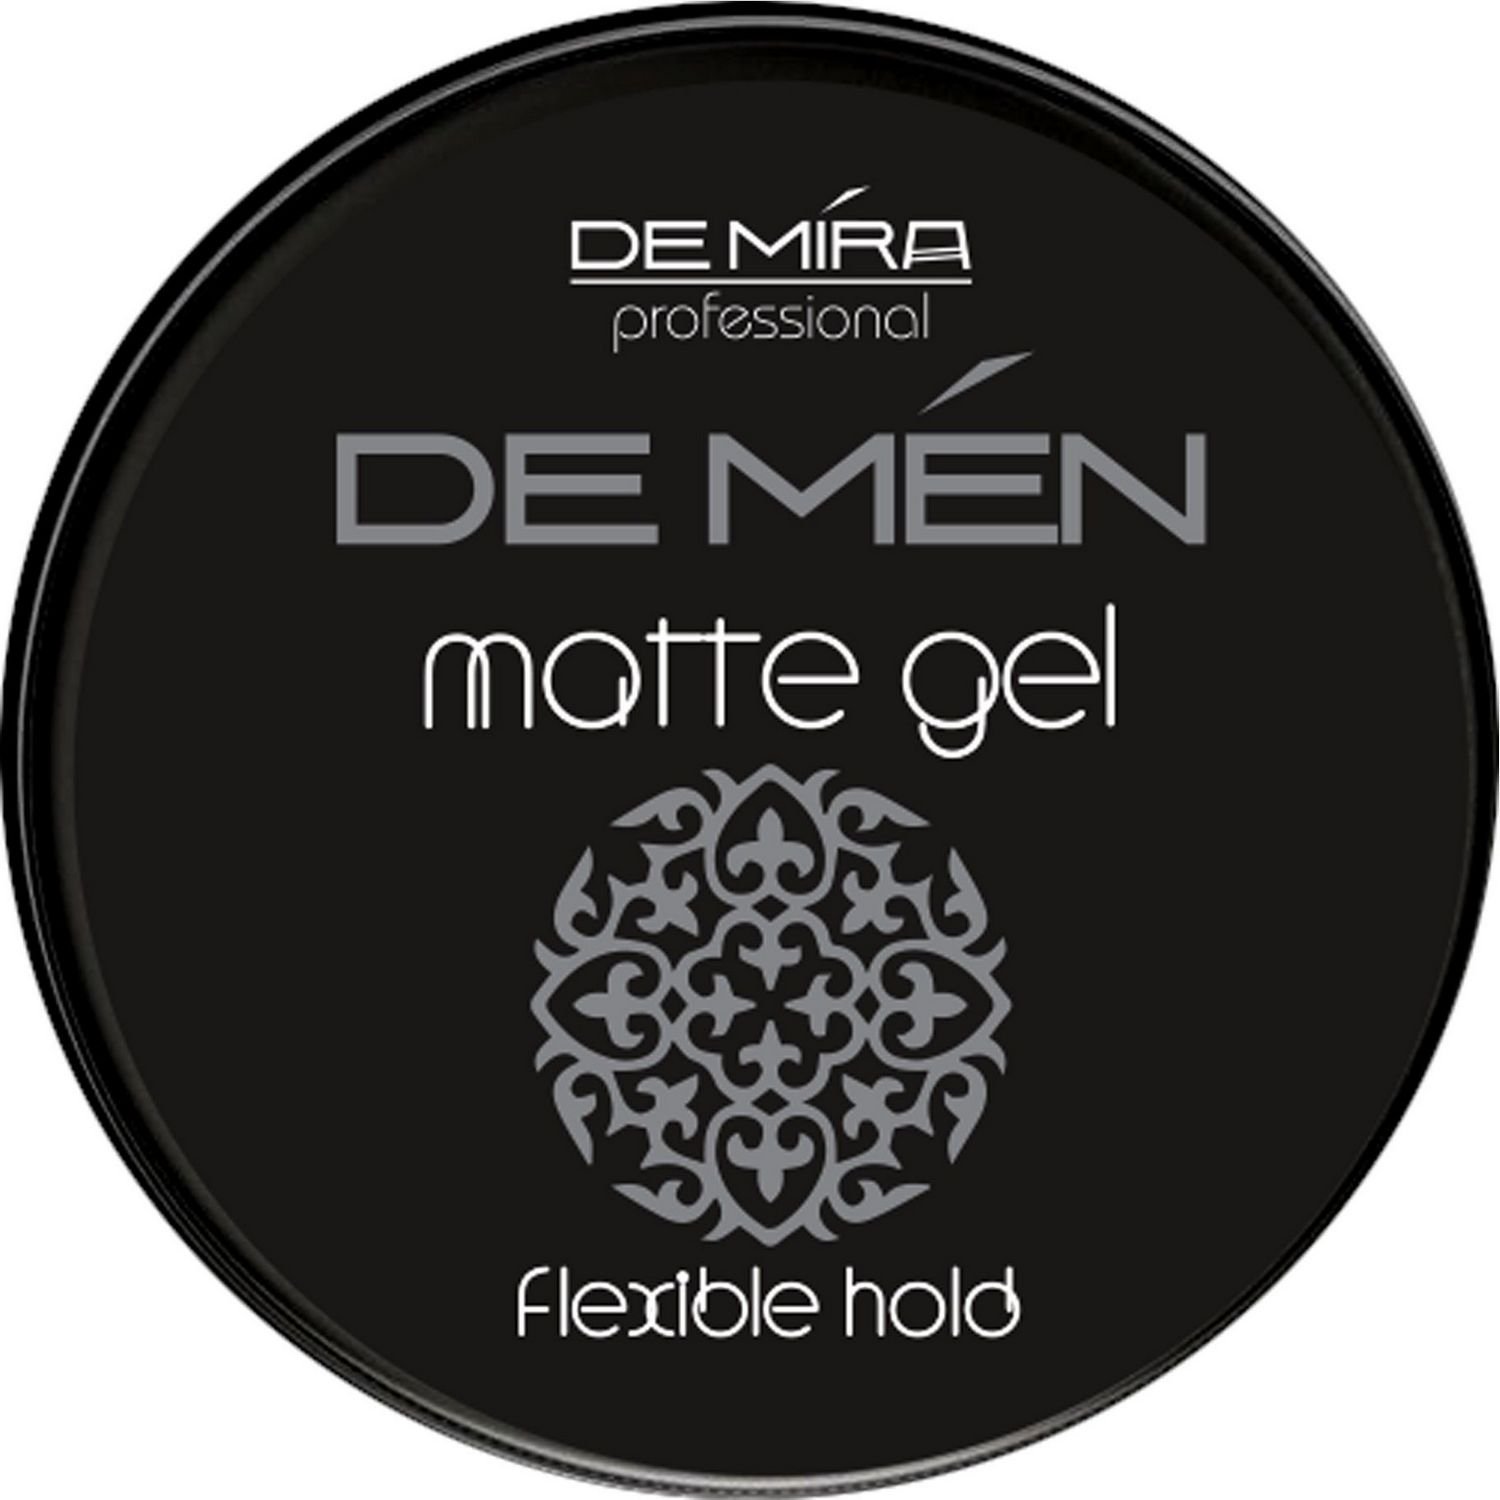 Матовый гель DeMira Professional DeMen Matte Gel для укладки волос, 200 мл - фото 1